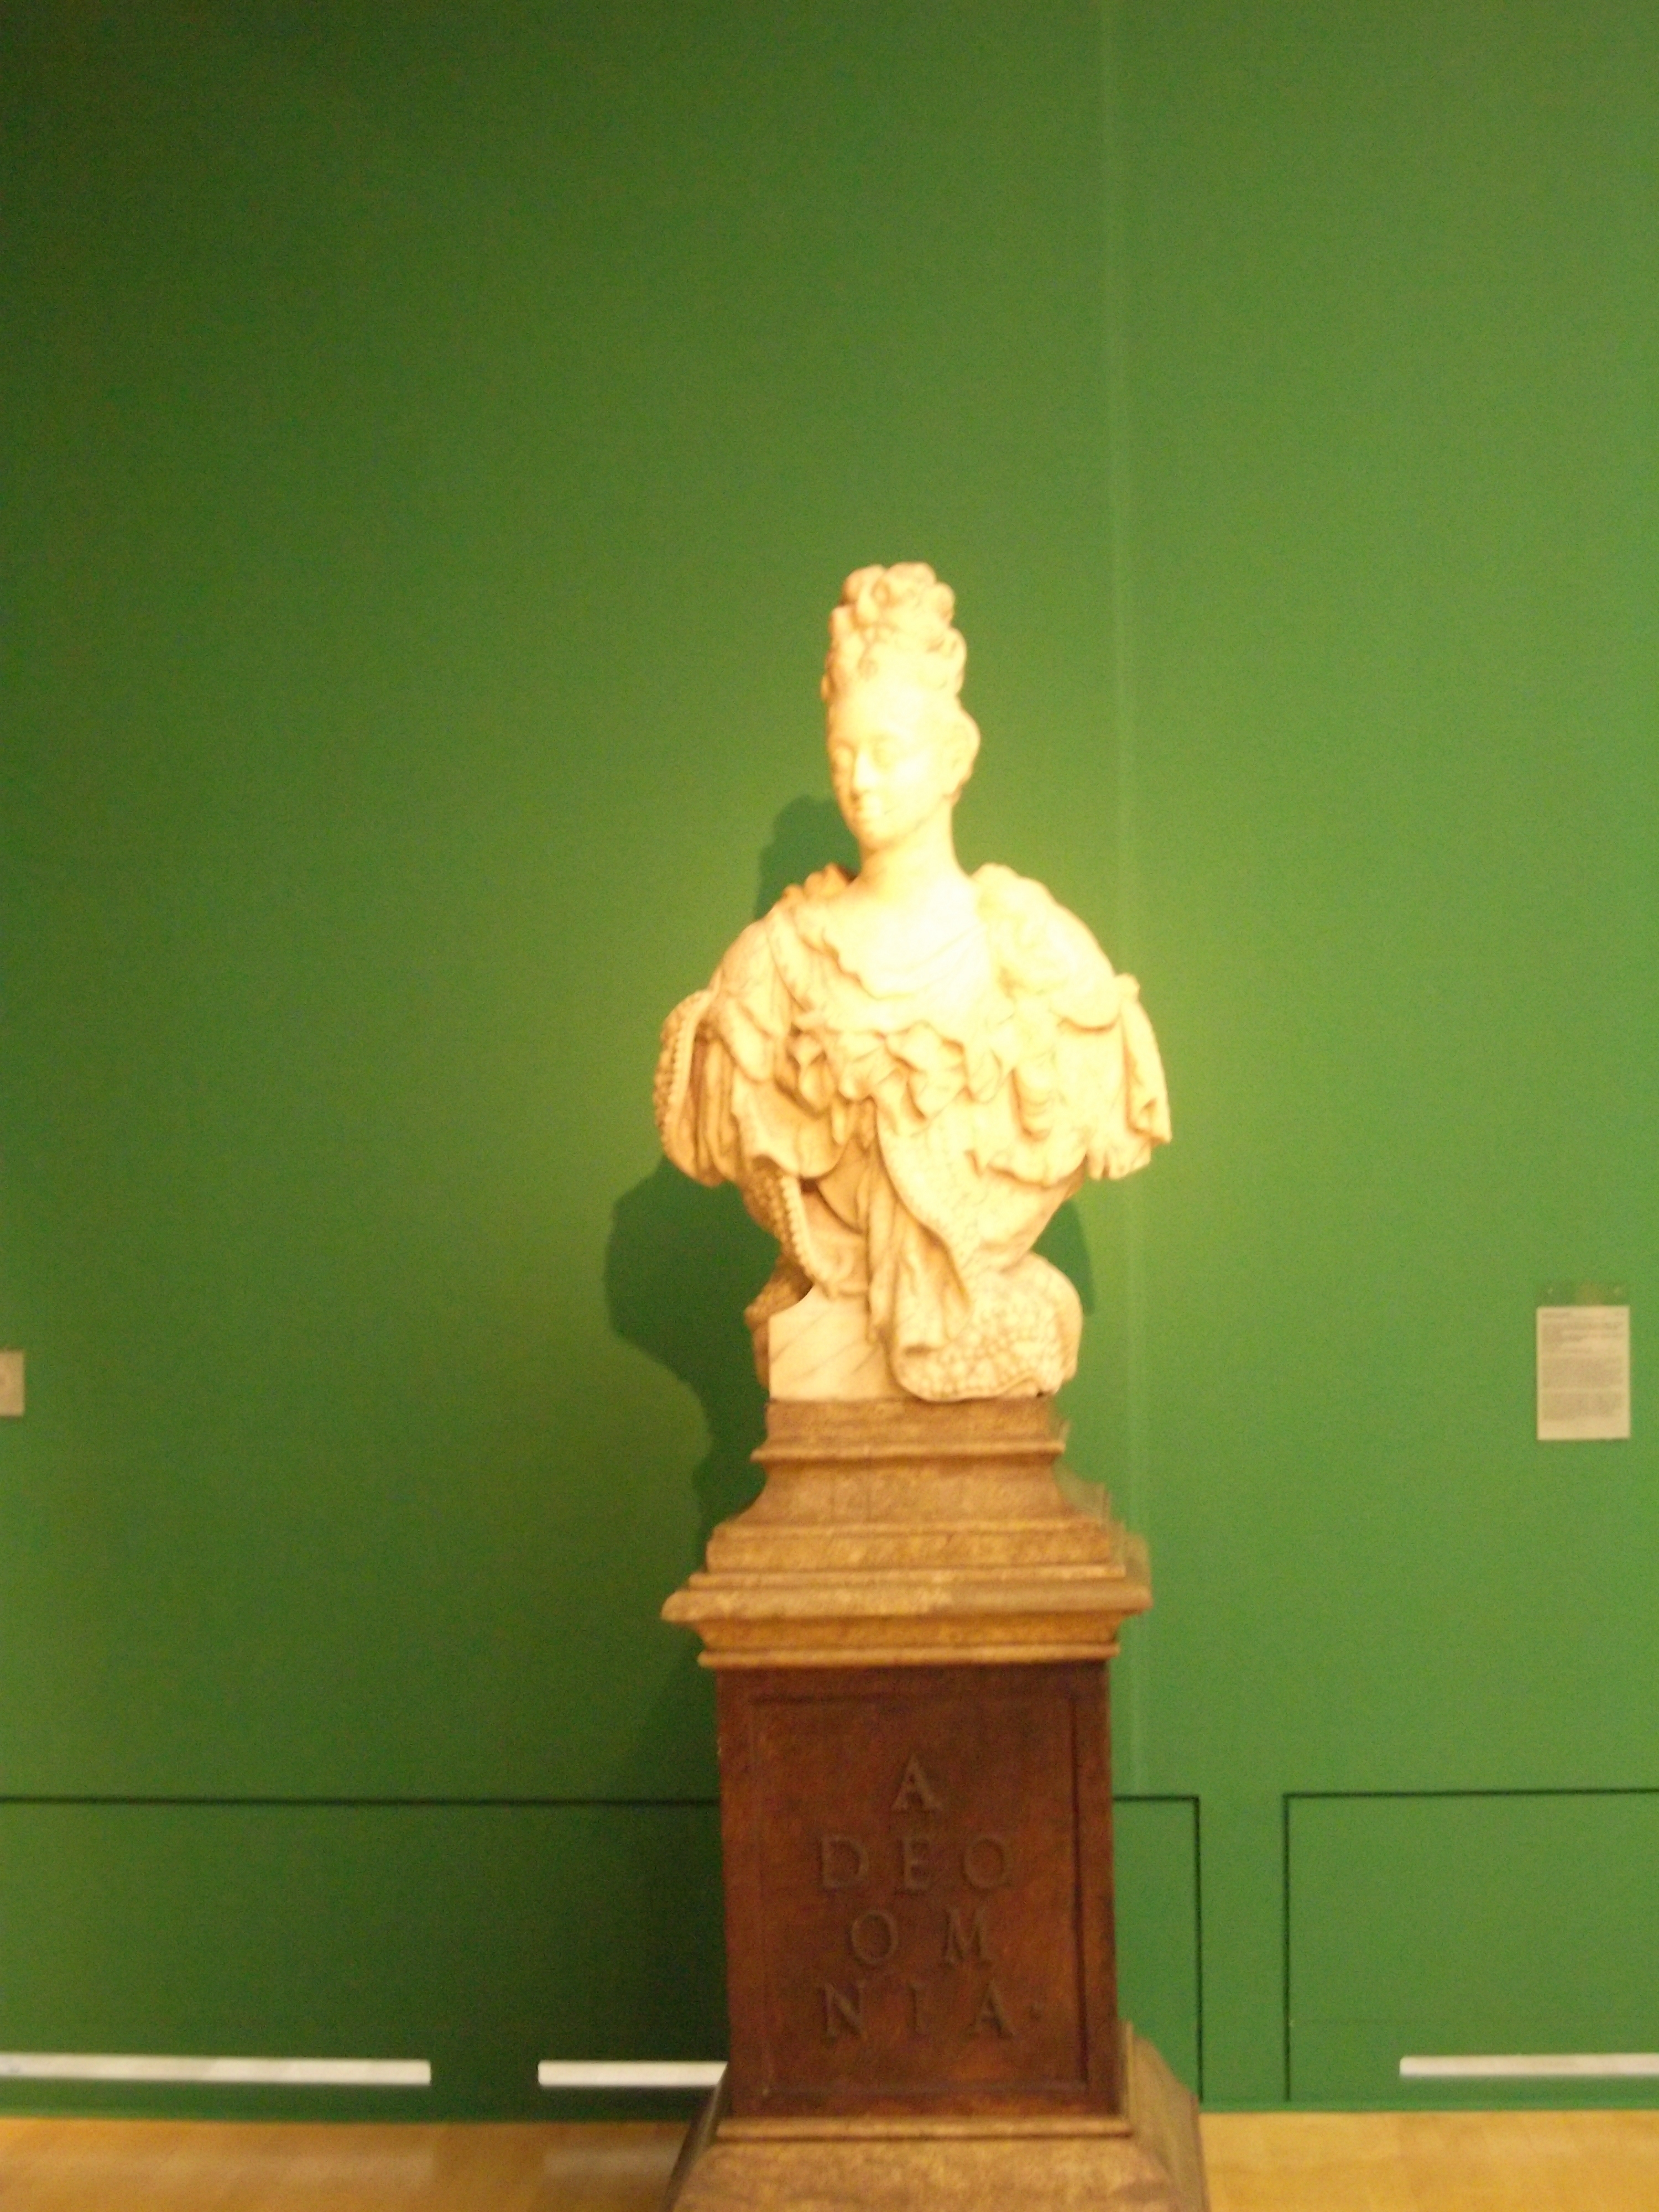 Die schöne italienische Gemahlin 
Anna Maria Luisa de Medici als Pendant zum Jan Wellem